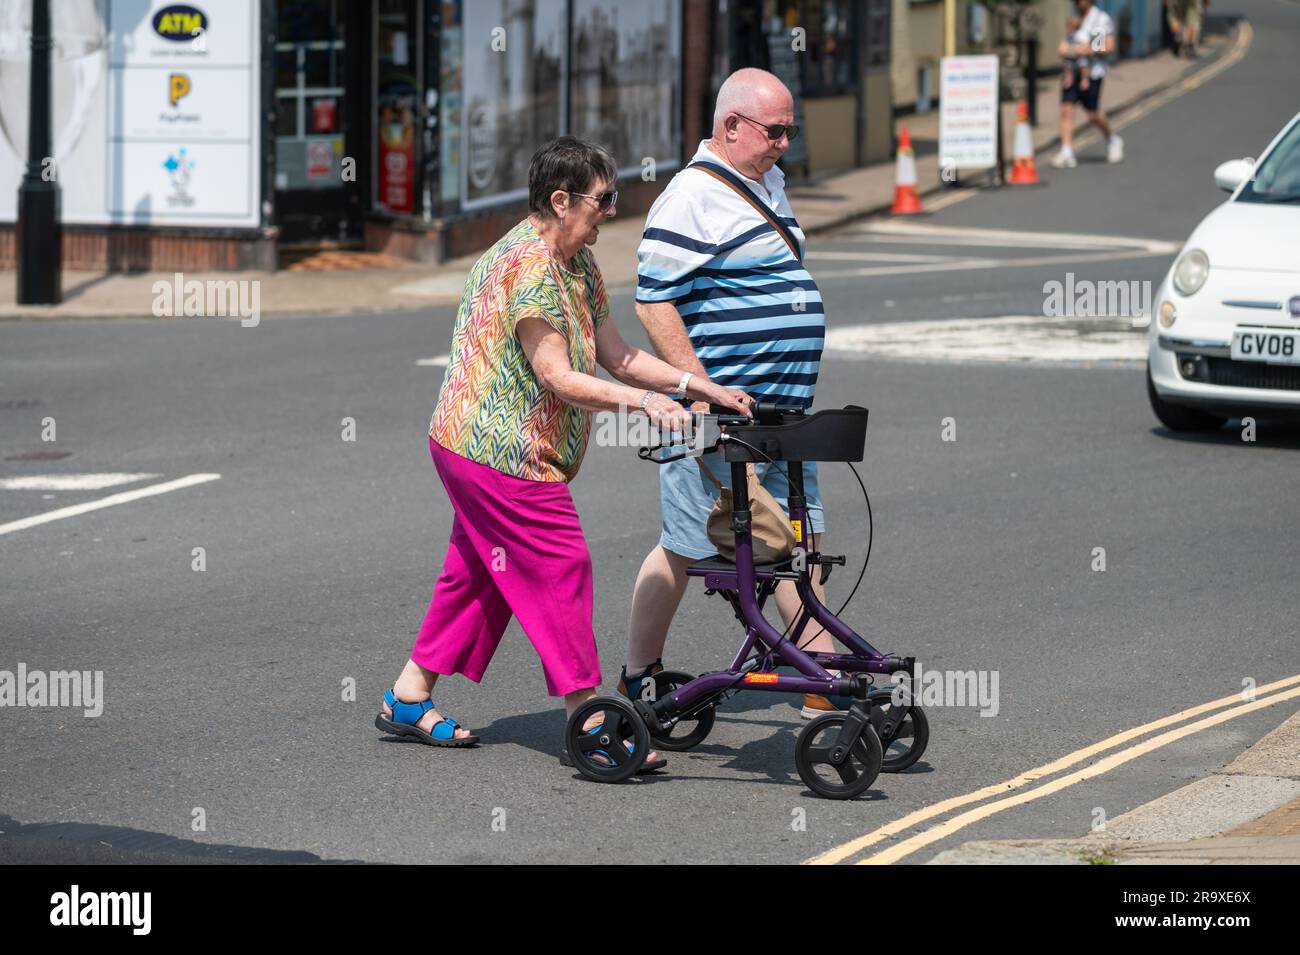 Frau, die mit Hilfe eines Rollers oder Rollers auf Rädern eine Straße überquert, eine Gehhilfe für behinderte Menschen in England, Großbritannien. Stockfoto